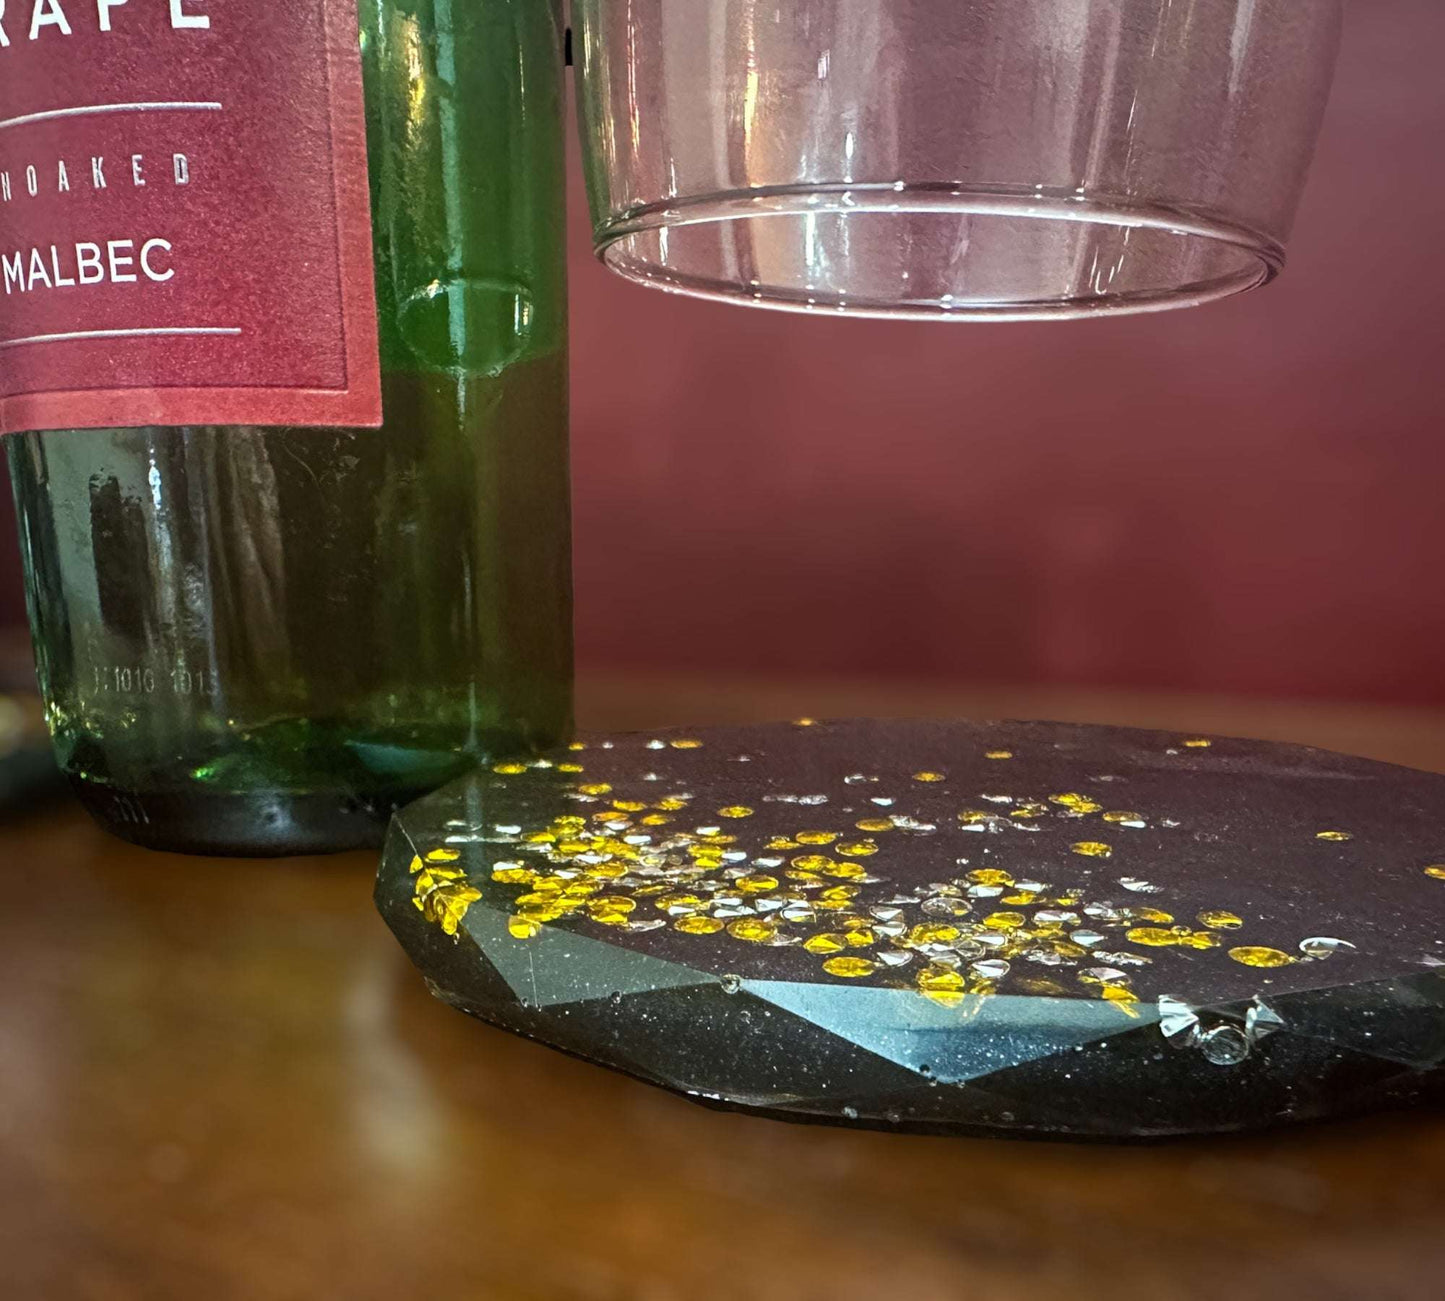 Wine Glass Caddy with 2 Coasters - Diamond Noir Wine Elegance Set